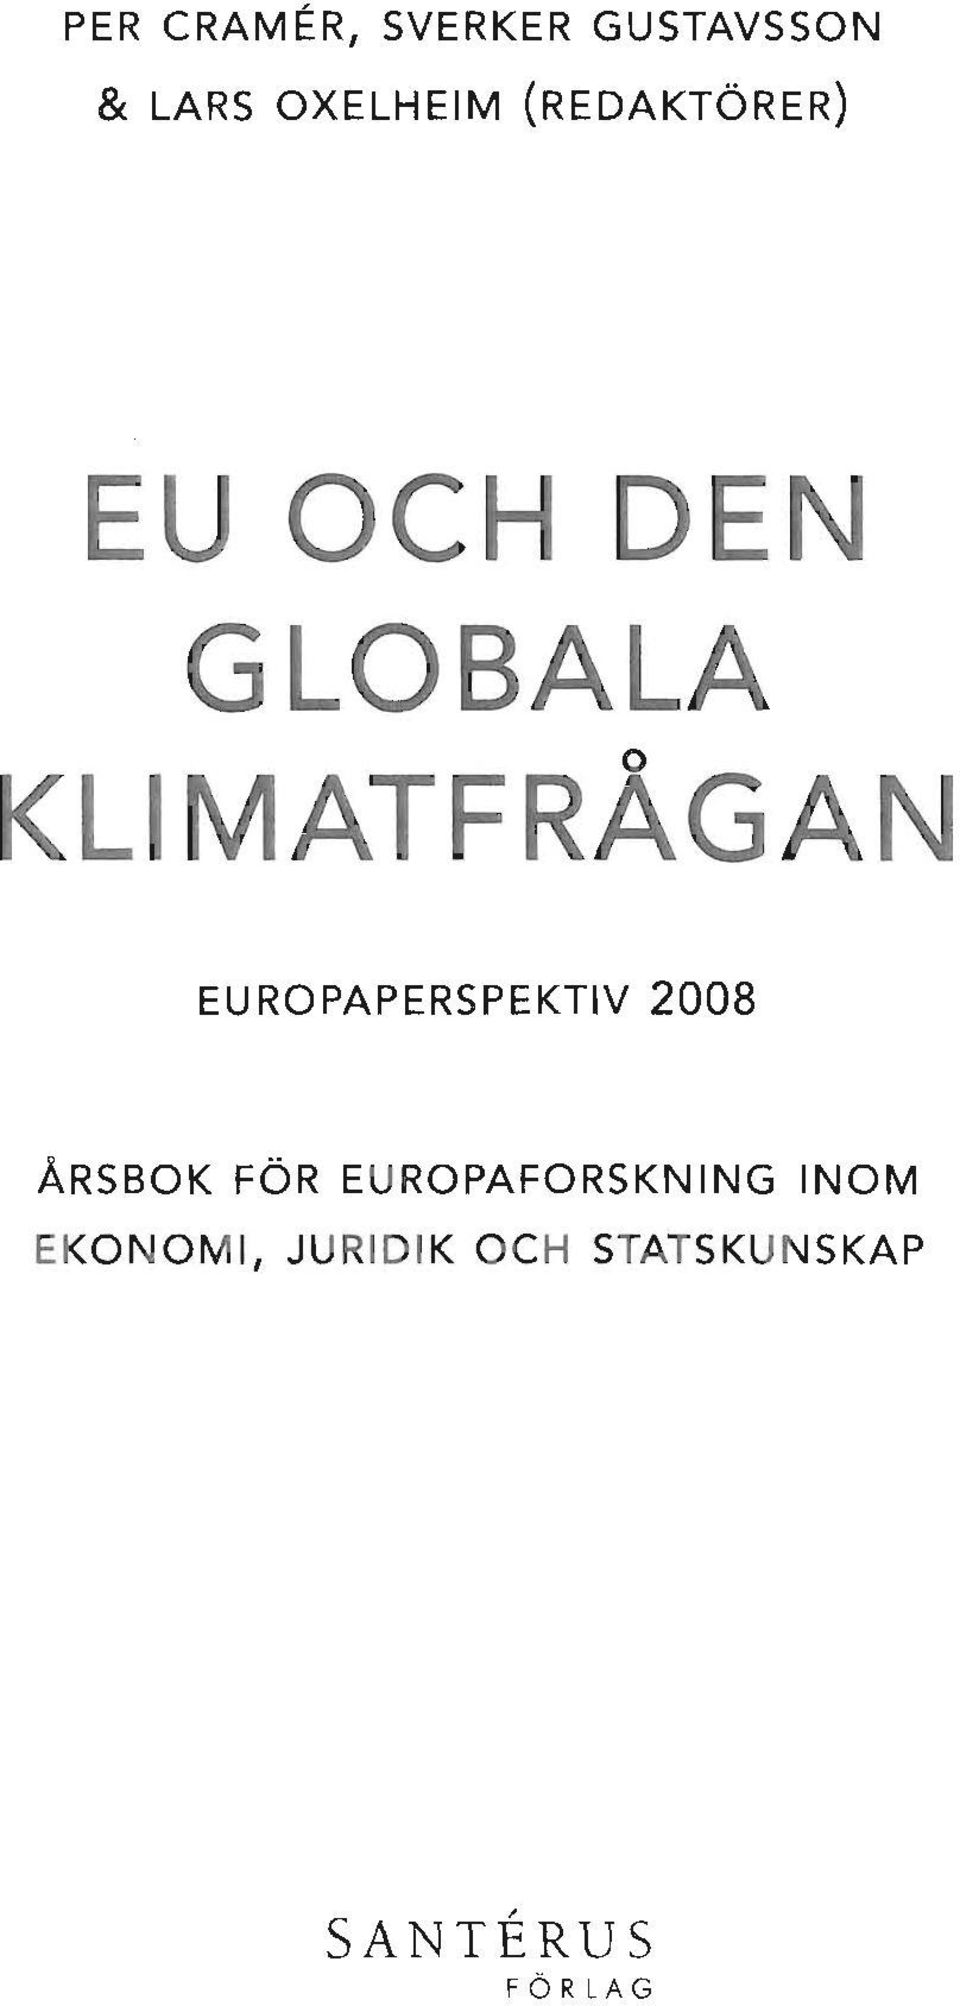 EUROPAPERSPEKTIV 2008 ÅRSBOK FÖR EUROPAFORSKNING